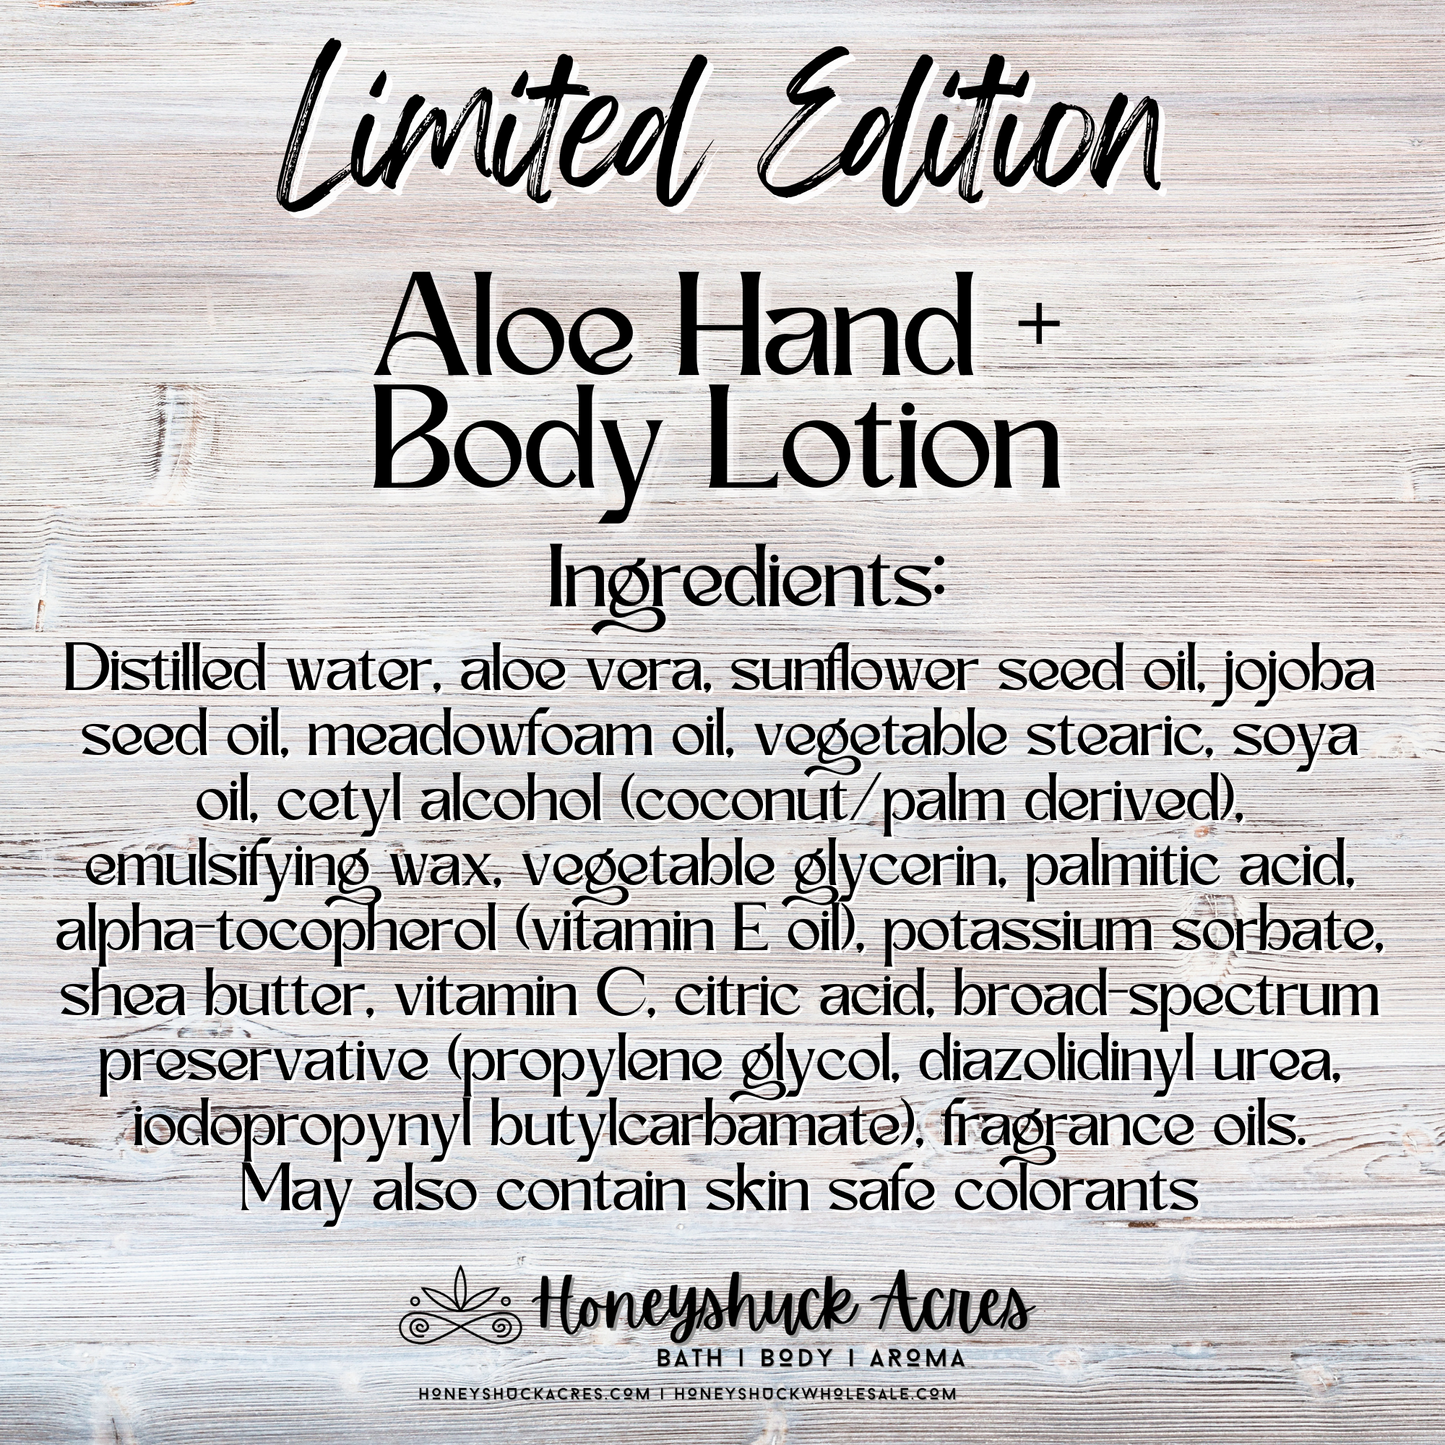 Limited Edition Aloe Hand + Body Lotion | Mahogany Shores